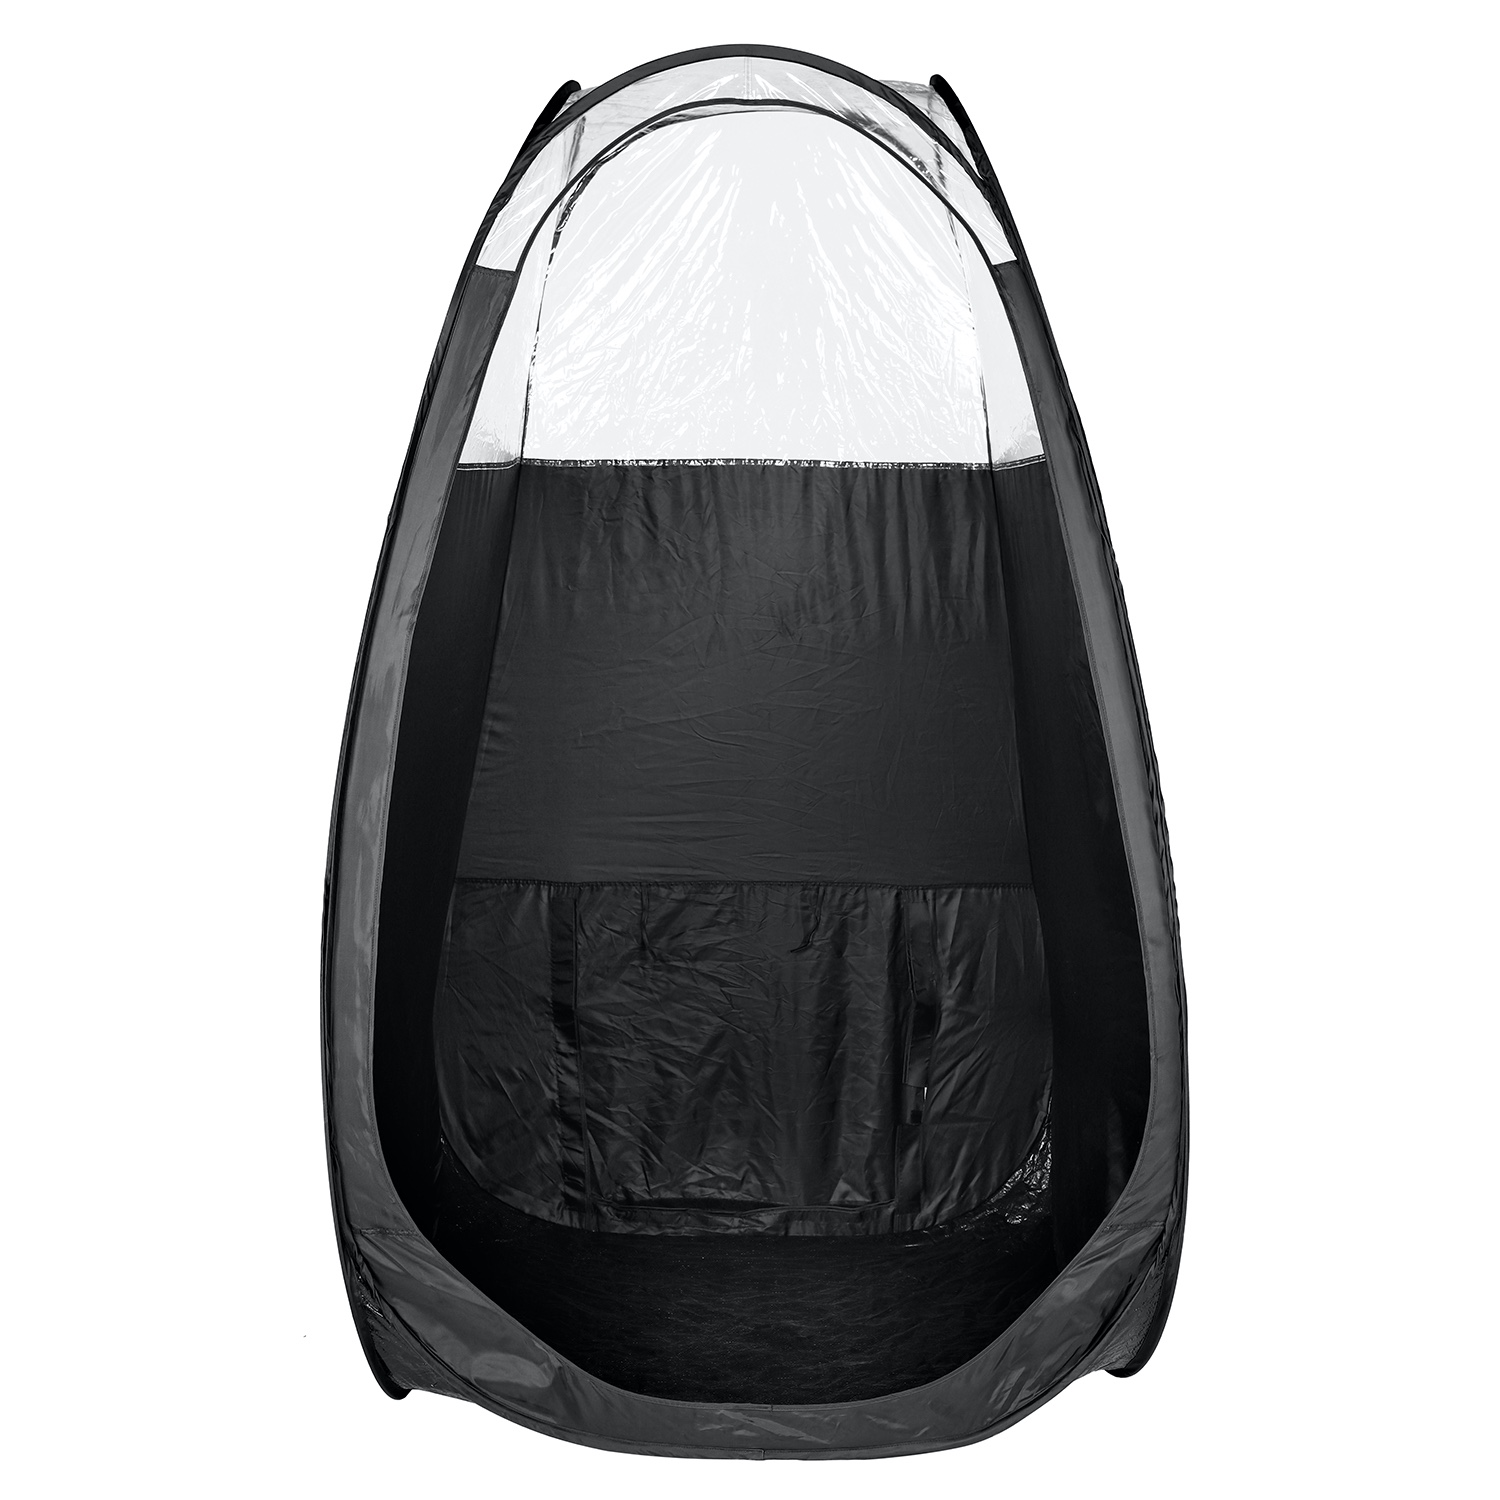 Legmelegebb fekete színű spray-barnító sátrak